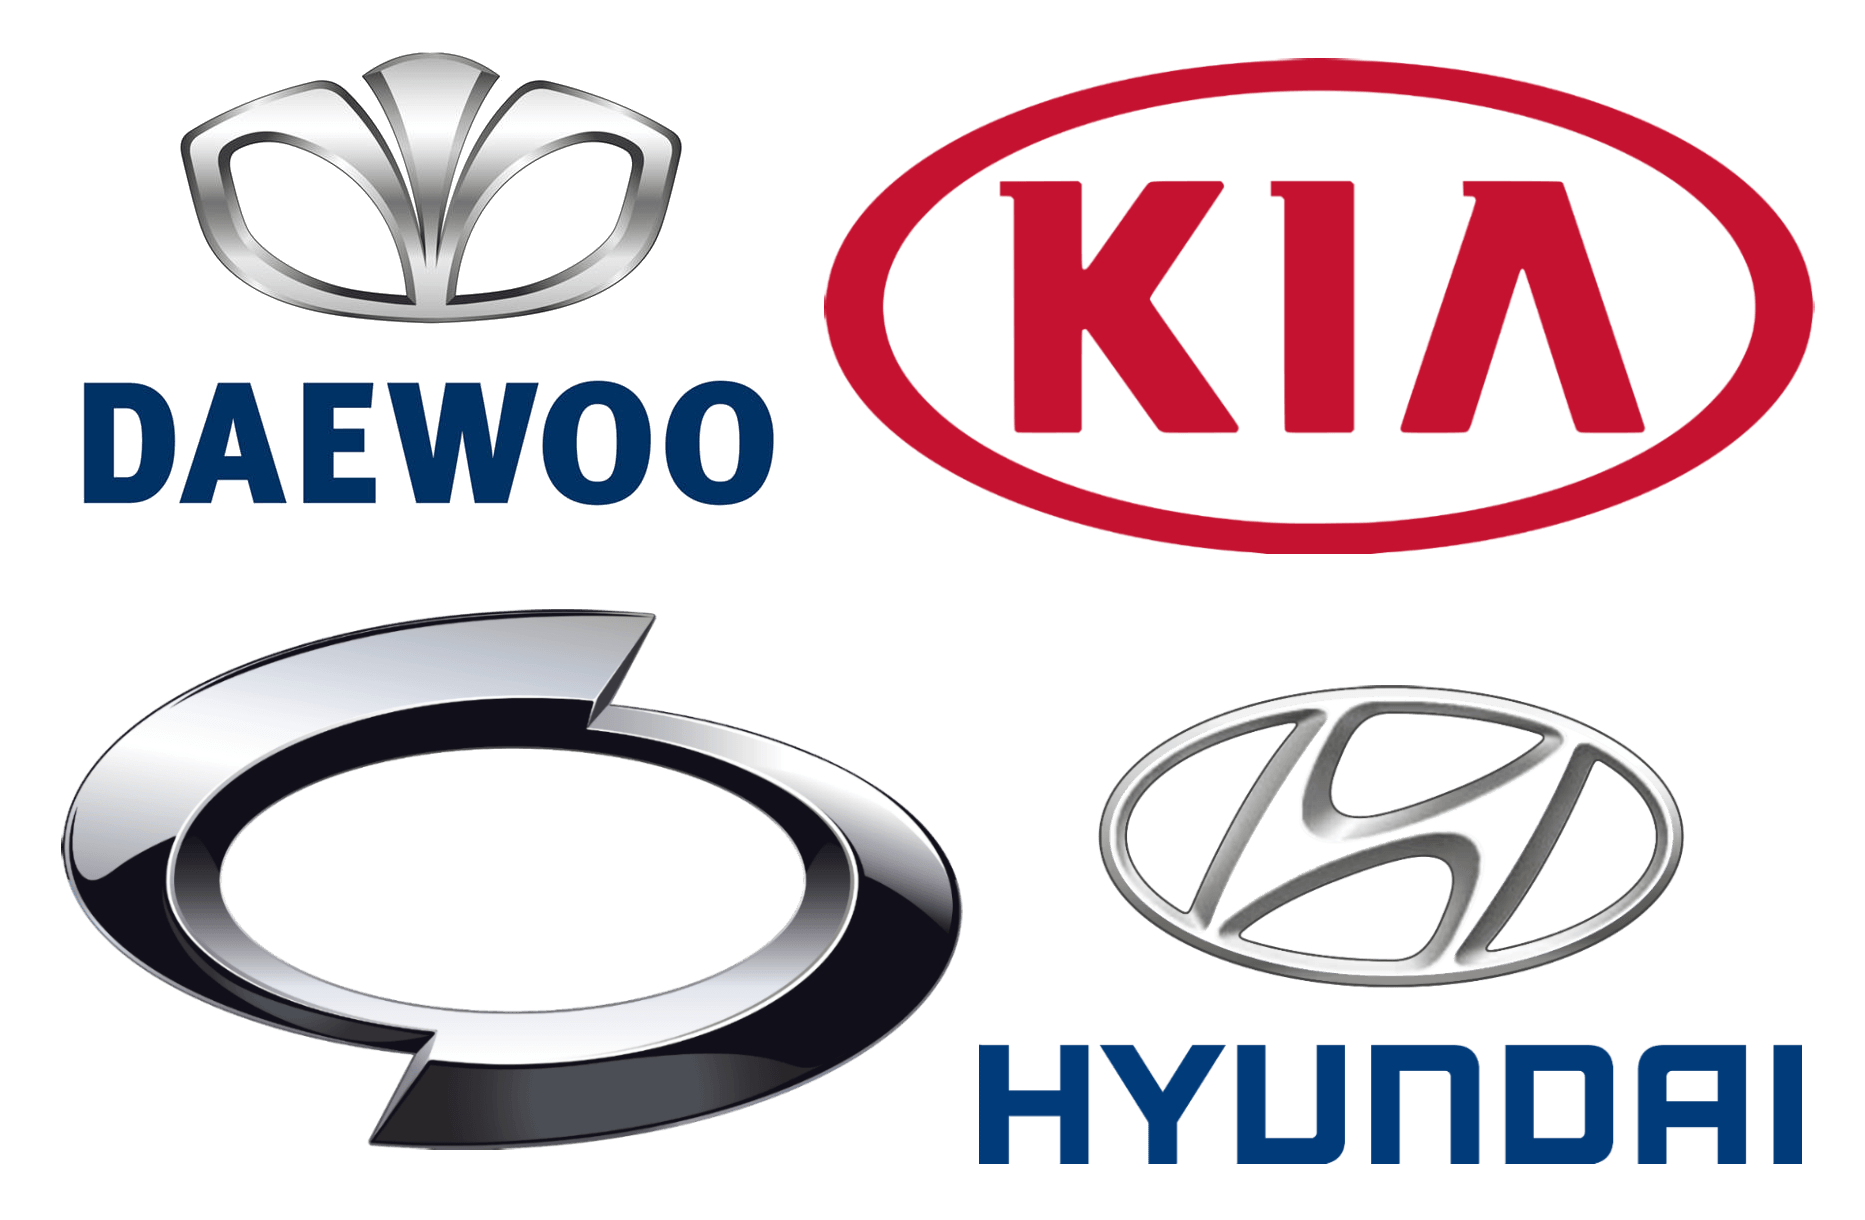 South Korean Company Logo - Korean Car Brands, Companies and Manufacturers | Car Brand Names.com